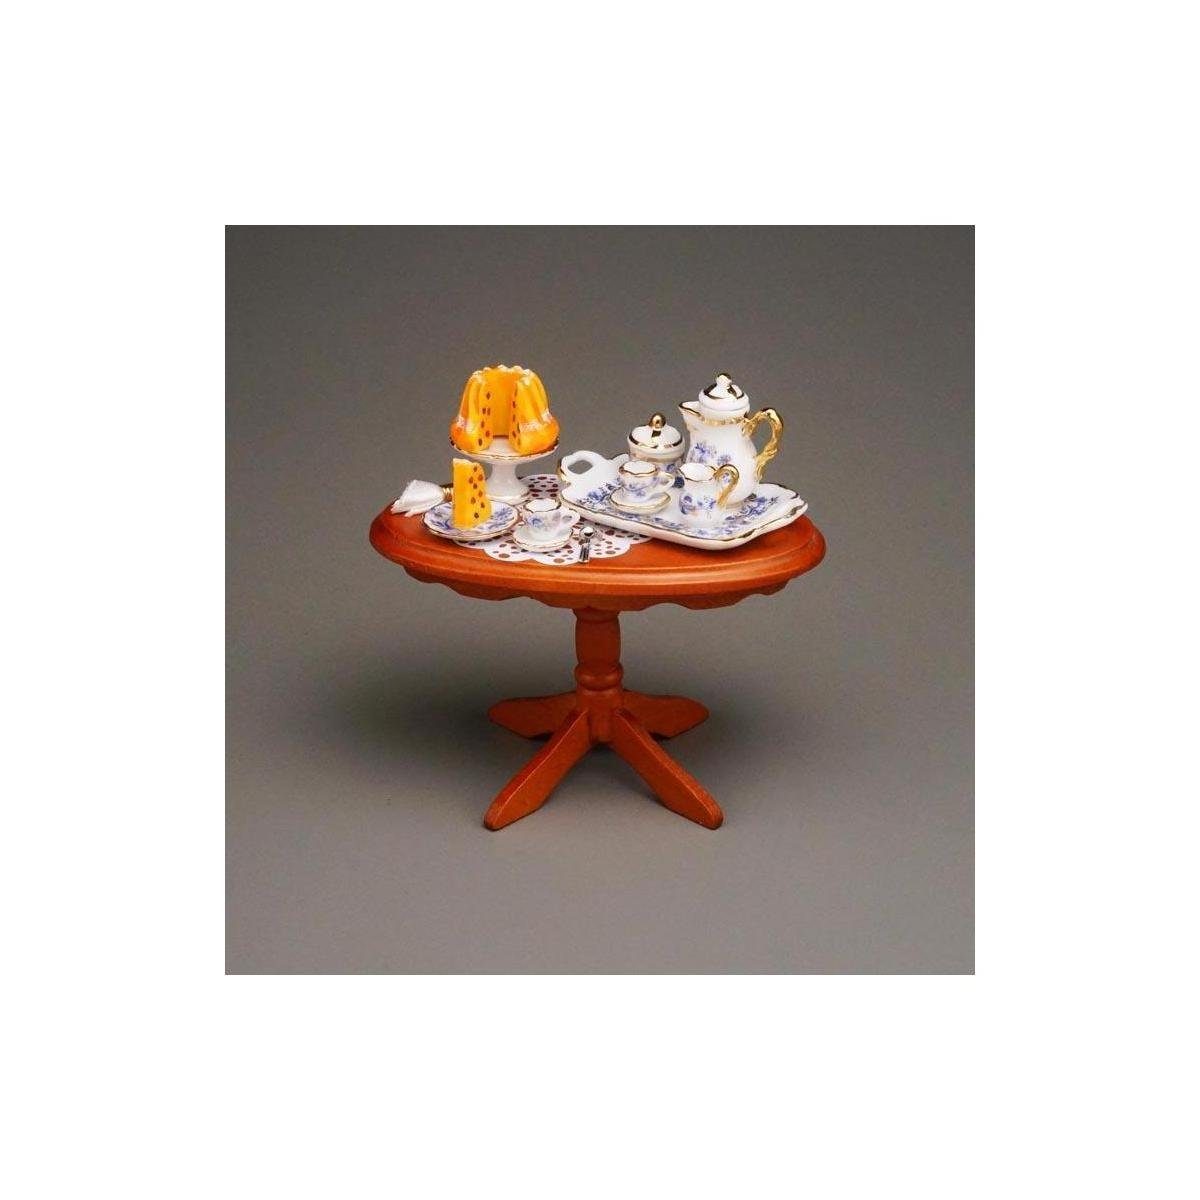 Miniatur Porzellan - Dekofigur "Kaffeeklatsch", Reutter 001.822/1 Tisch